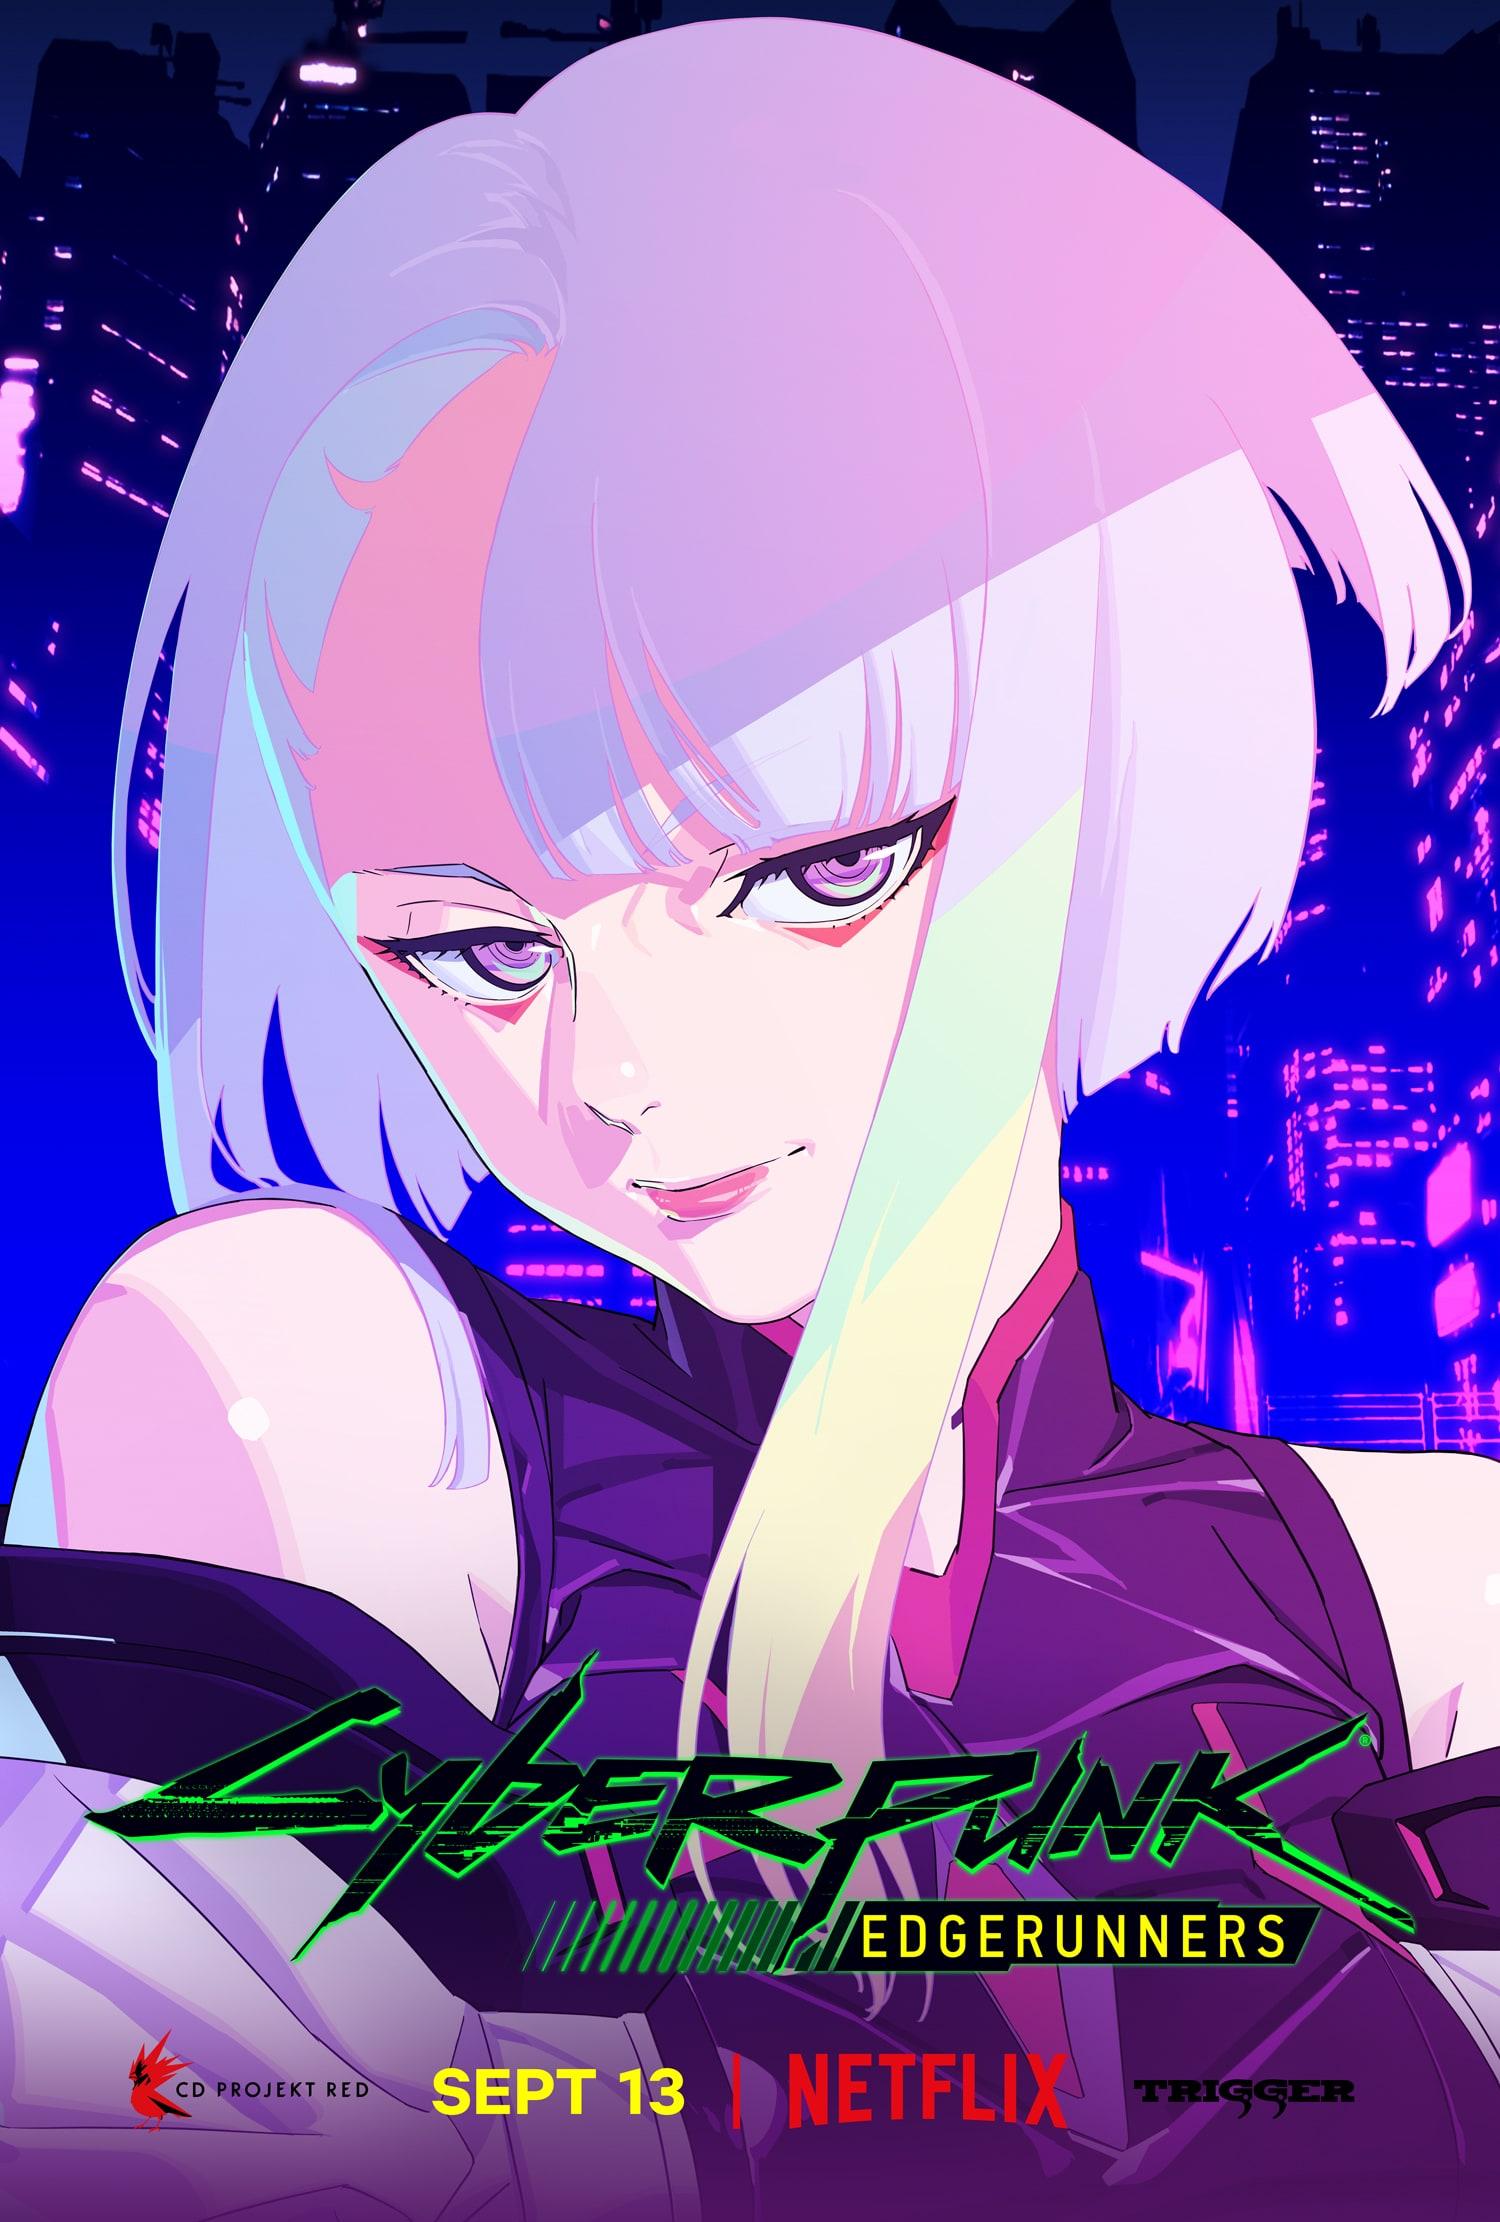 Update de Cyberpunk 2077 insere homenagens emocionantes do anime